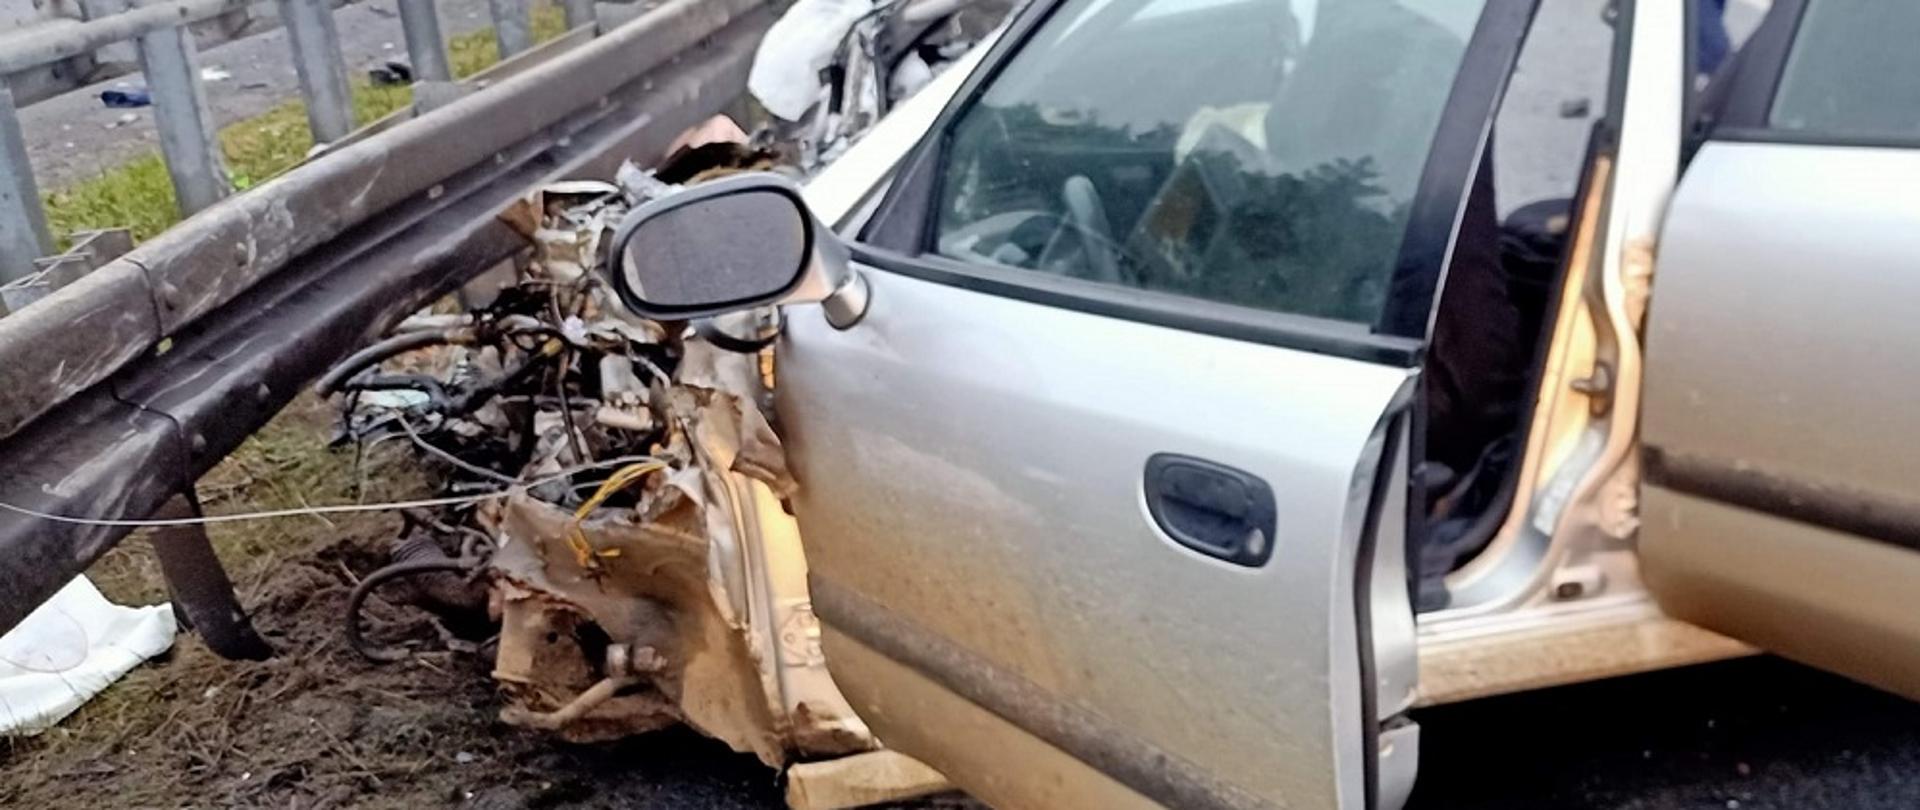 Zdjęcie przedstawia uszkodzony samochód osobowy po wypadku drogowym. Pojazd stoi na jezdni przed metalowymi barierami energochłonnymi